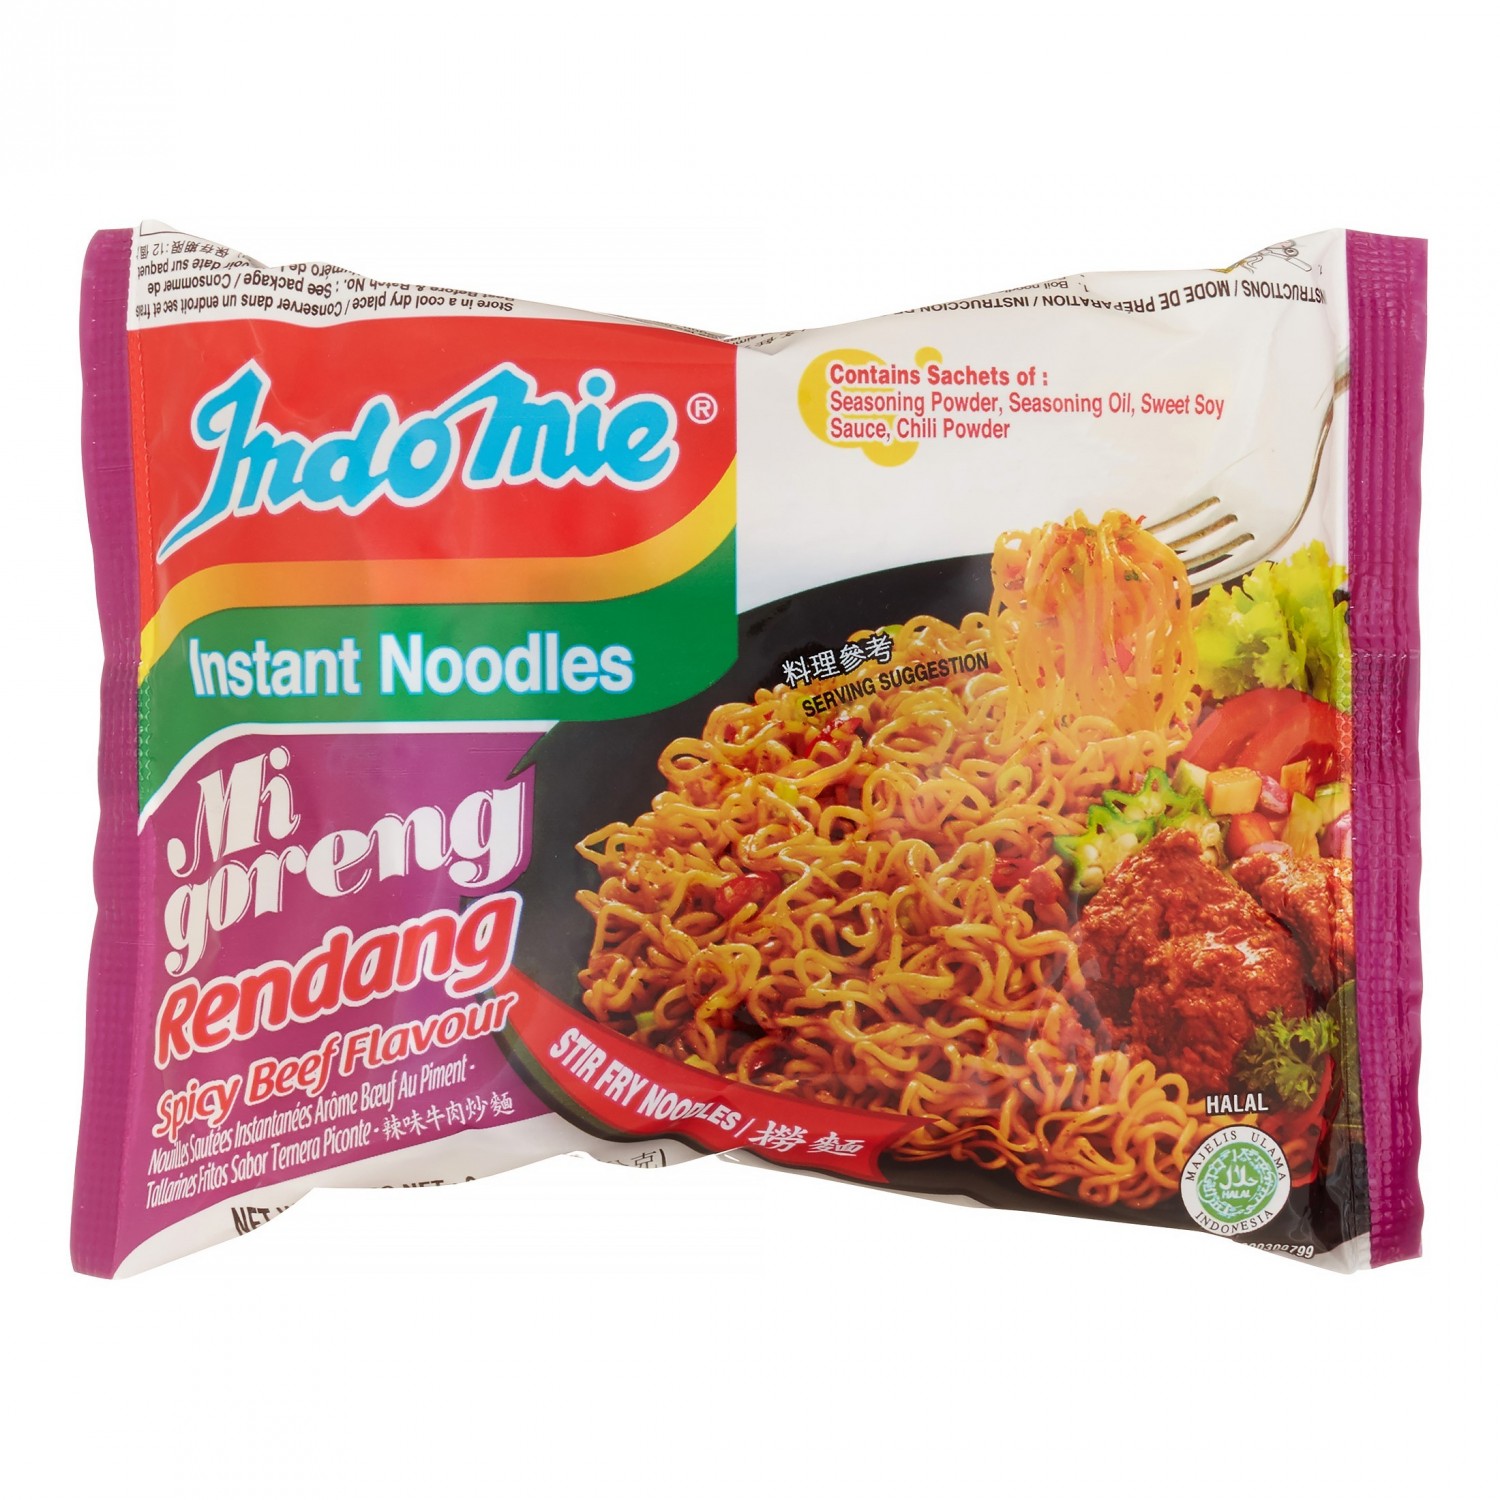 Indomie noodles - 80g - Instant noodles - Spicy beef